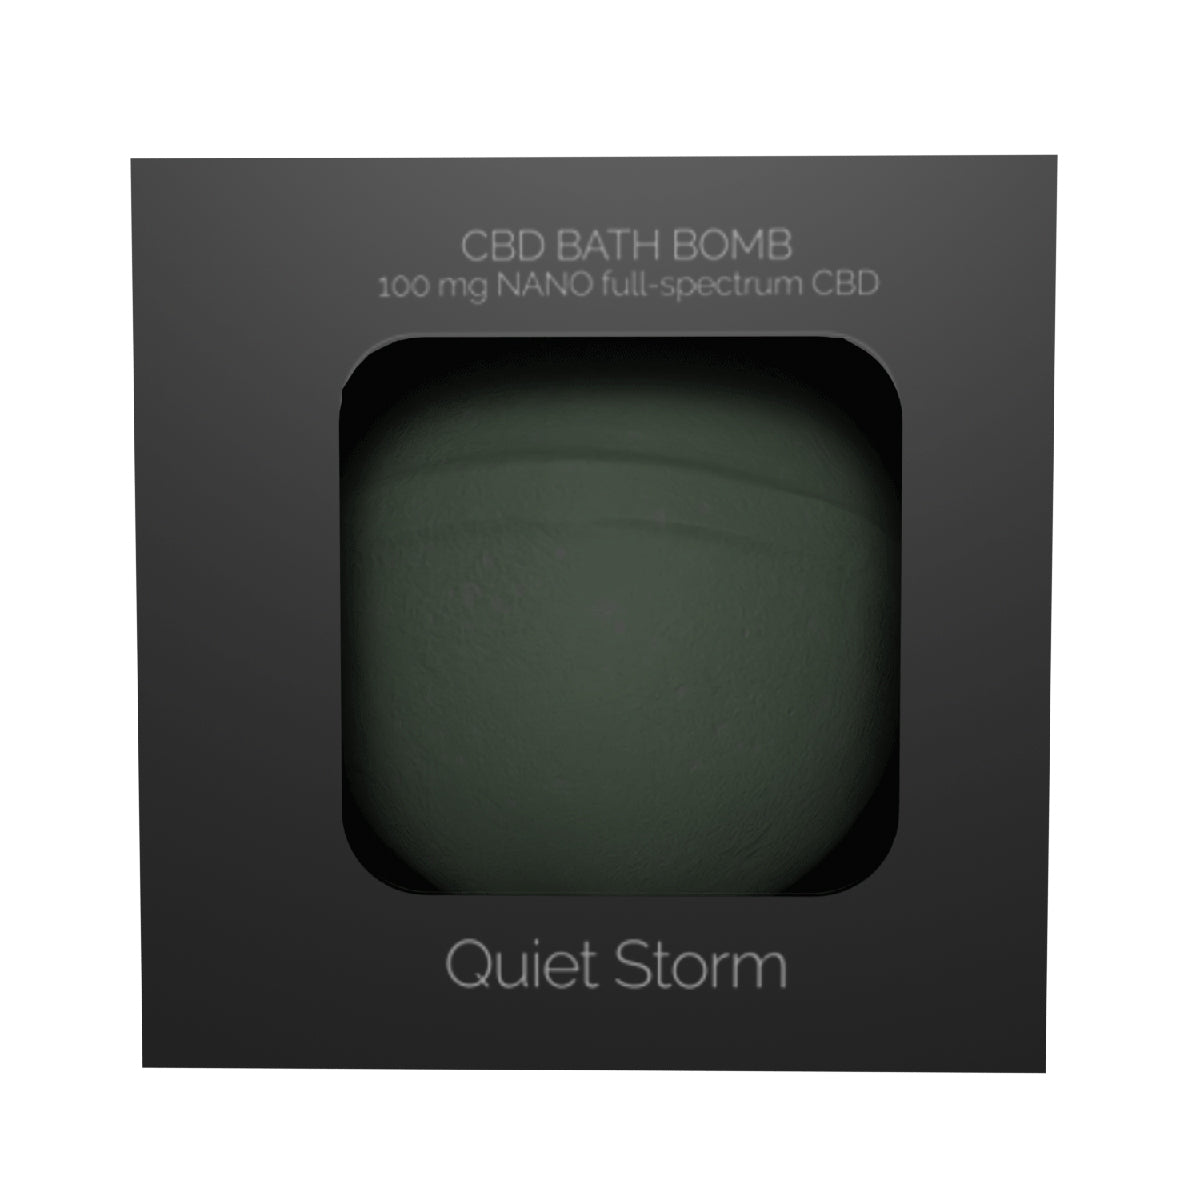 NEO Sensual CBD Bath Bomb - Quiet Storm